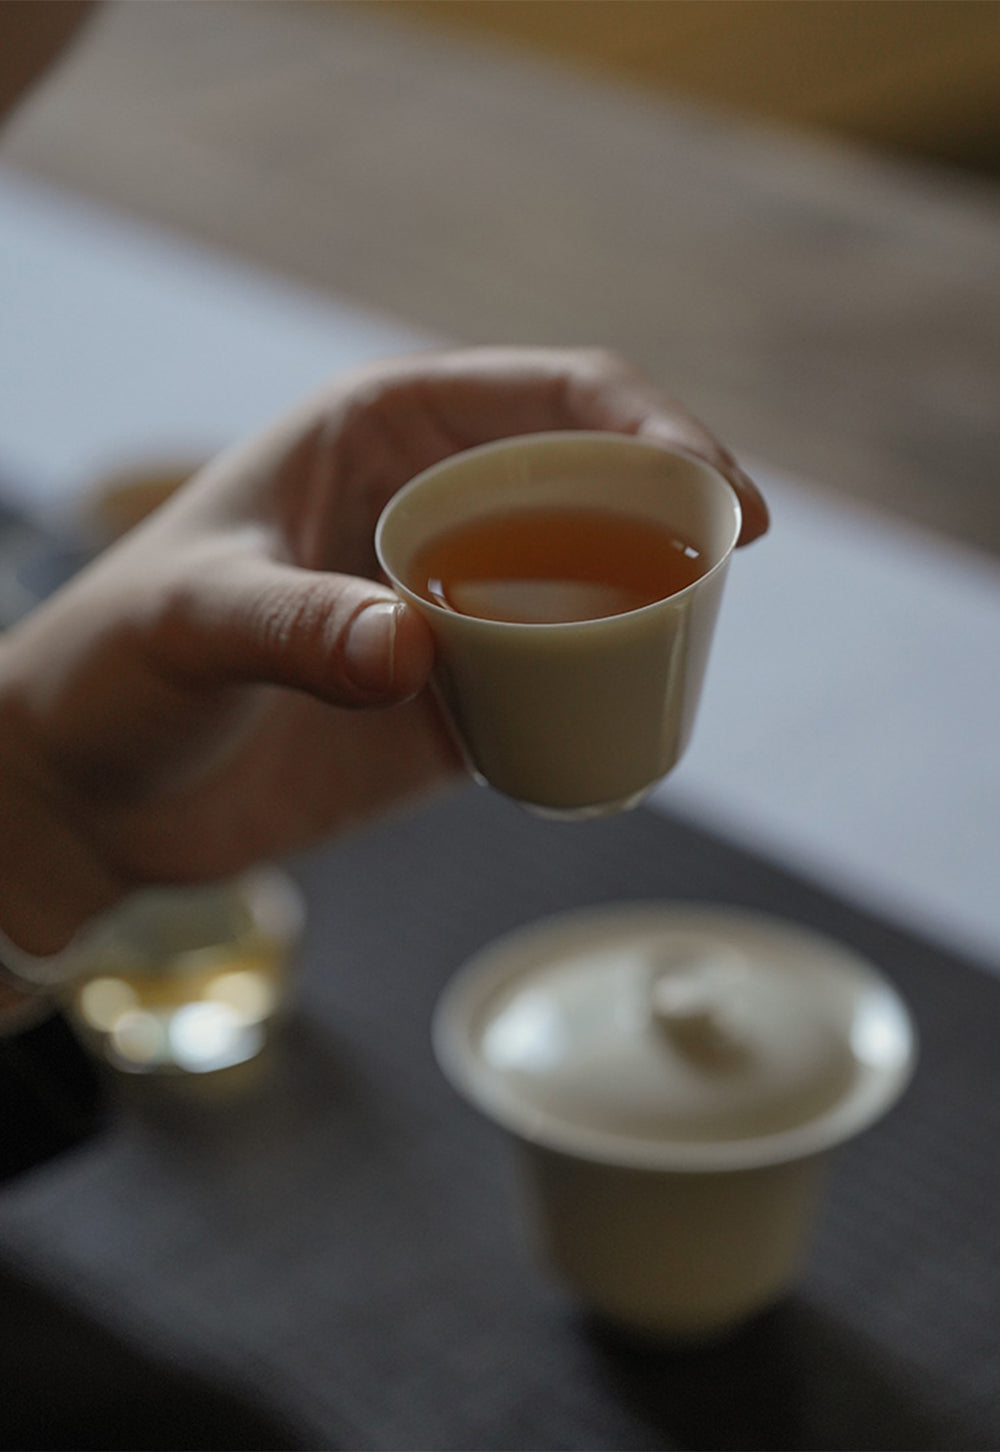 IwaiLoft 白玉 茶杯 茶器 湯のみ 湯呑み お茶 カップ コップ 来客用 お茶用品 ティーウェア 中国茶器 贈り物にも 食洗機対応 電子レンジ対応